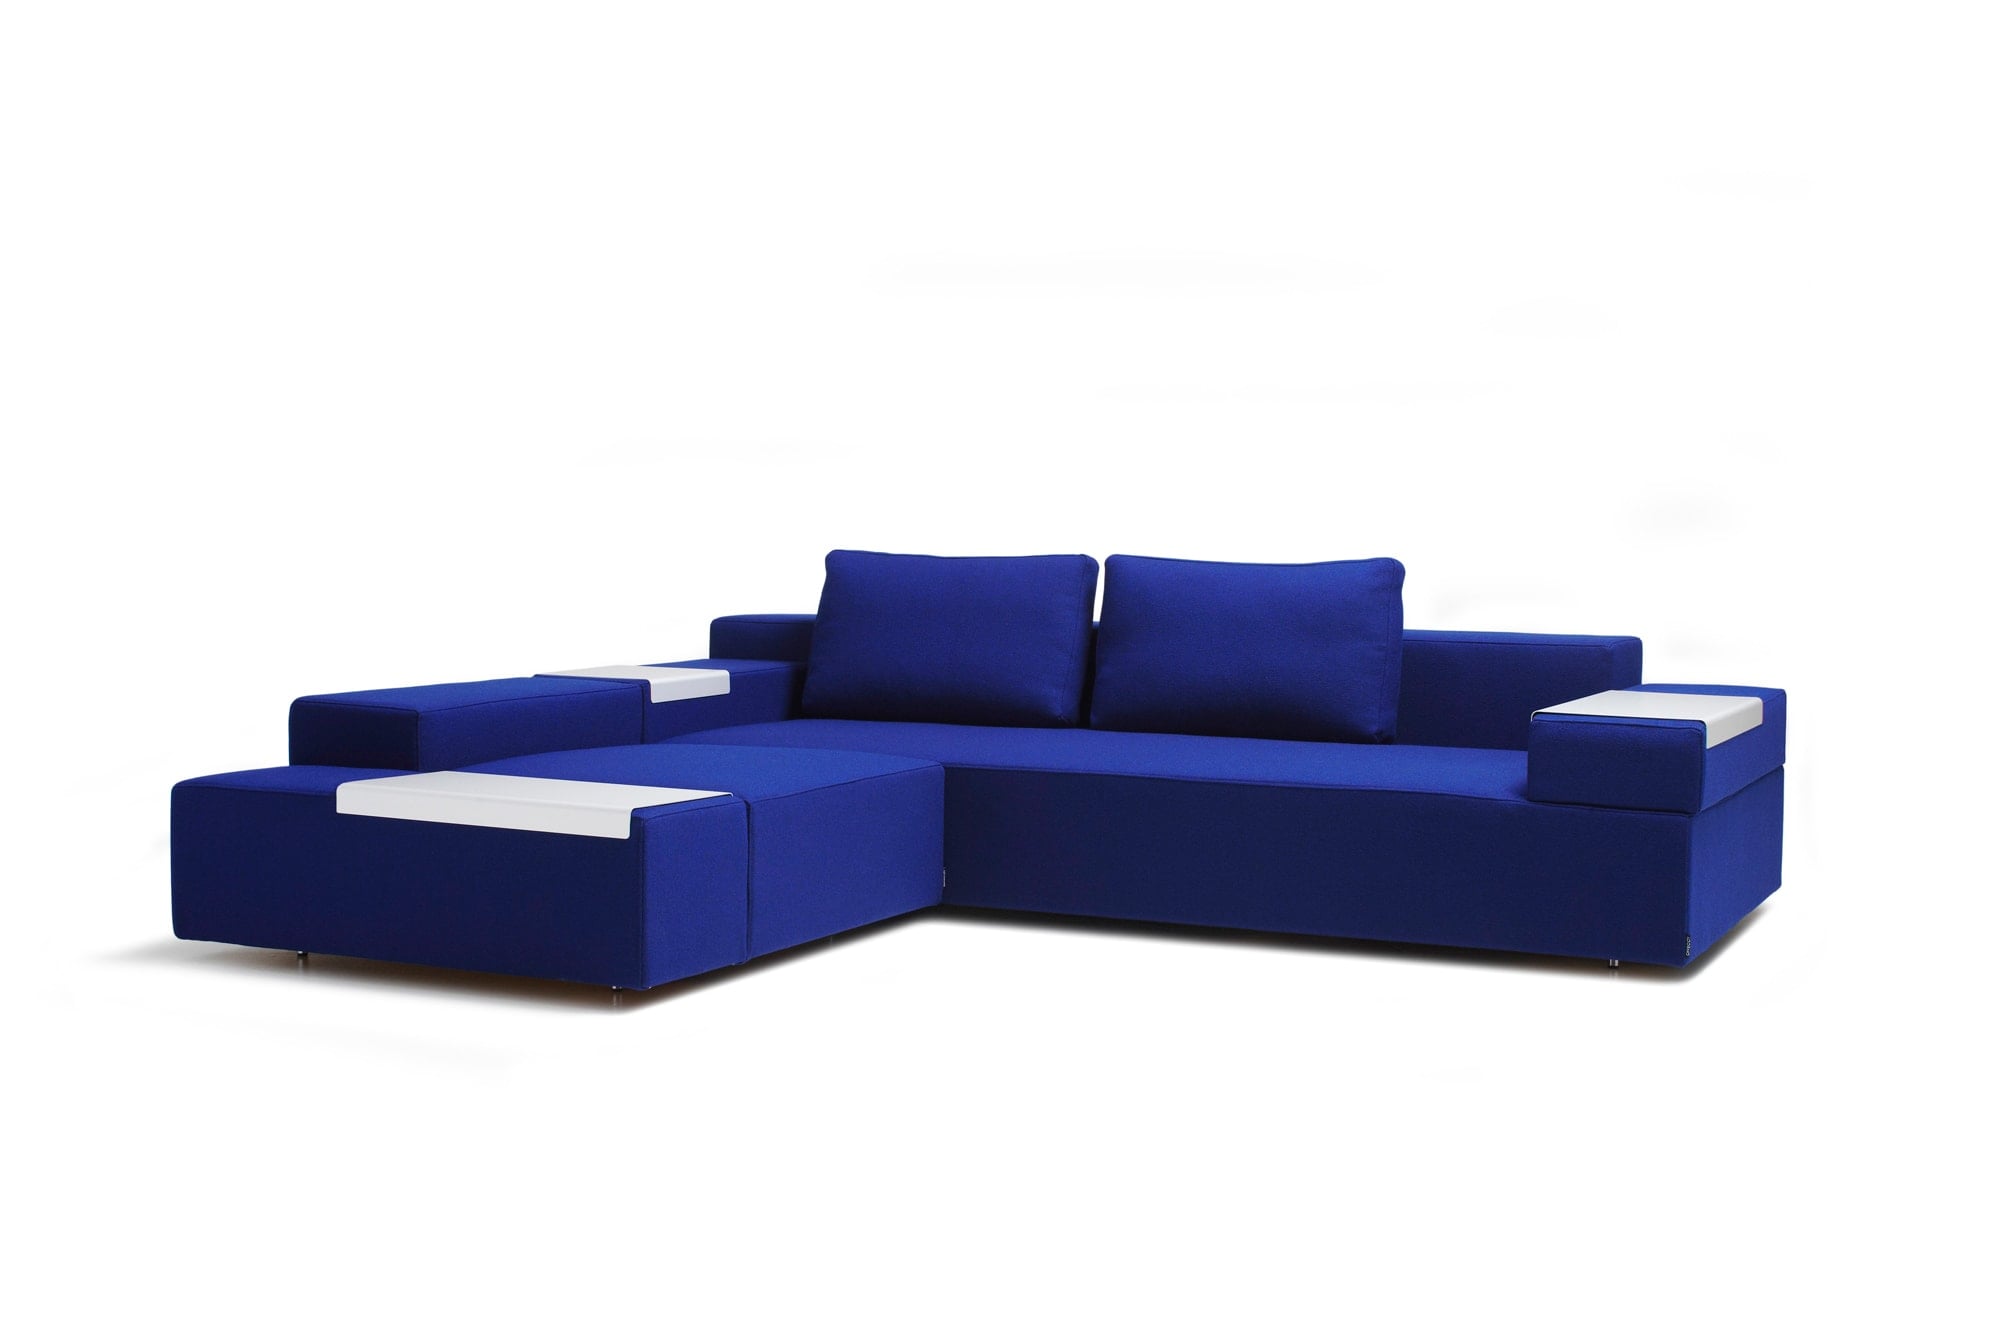 柳原為瑞典傢俱製造商OFFECCT設計的沙發。